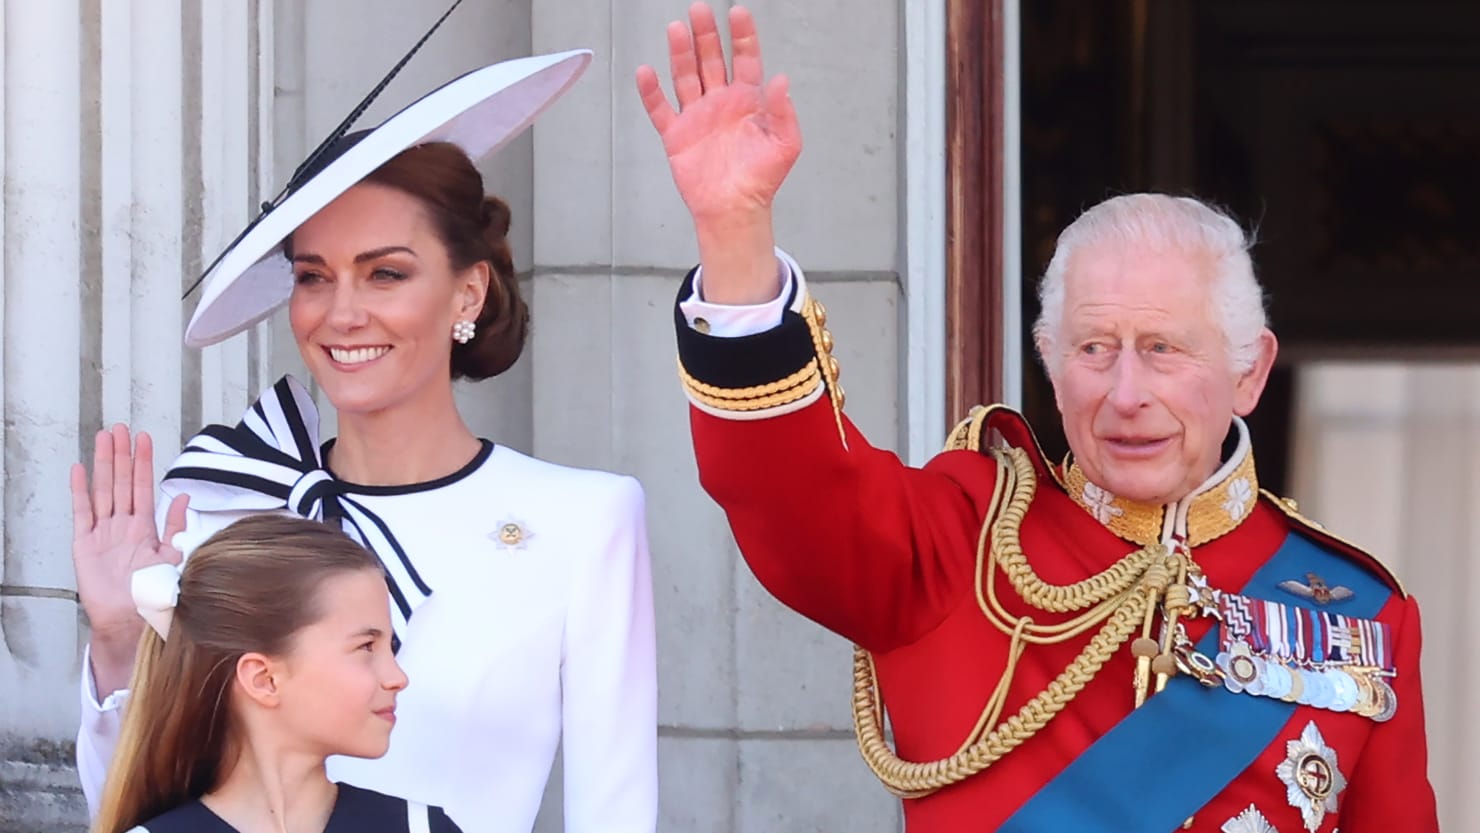 Kate Middleton definisce la monarchia “il miglior giorno dall’incoronazione”: fonte reale